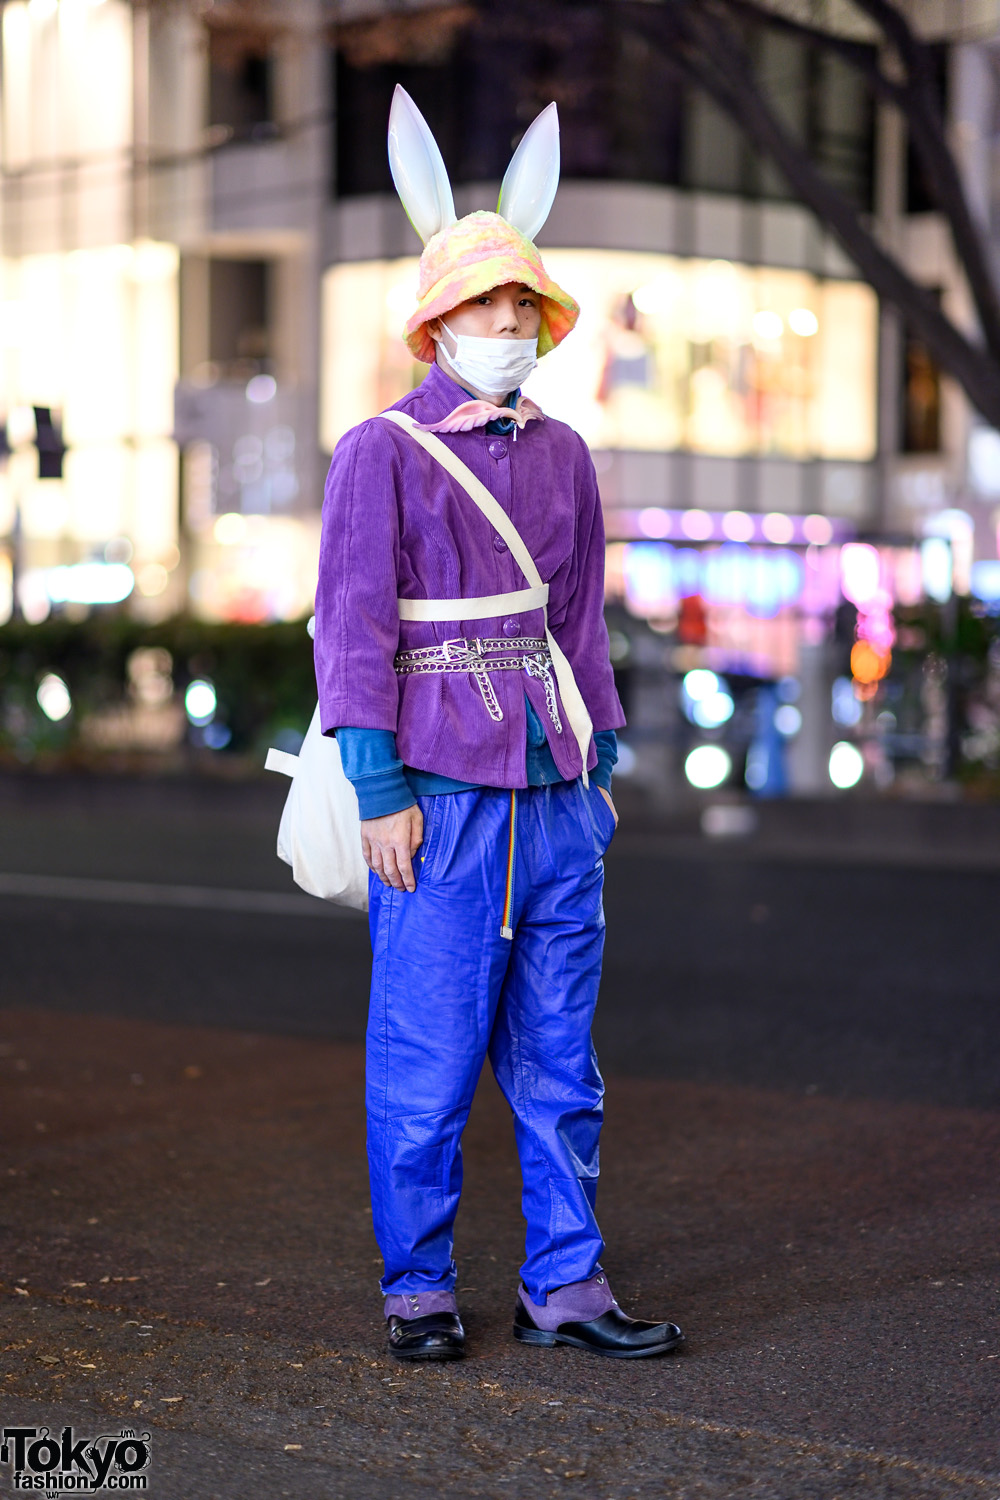 Resale Harajuku Street Style w/ Bunny Ears, Corduroy Jacket, Faux Leather Pants, Layered Belts & Yohji Yamamoto Bag